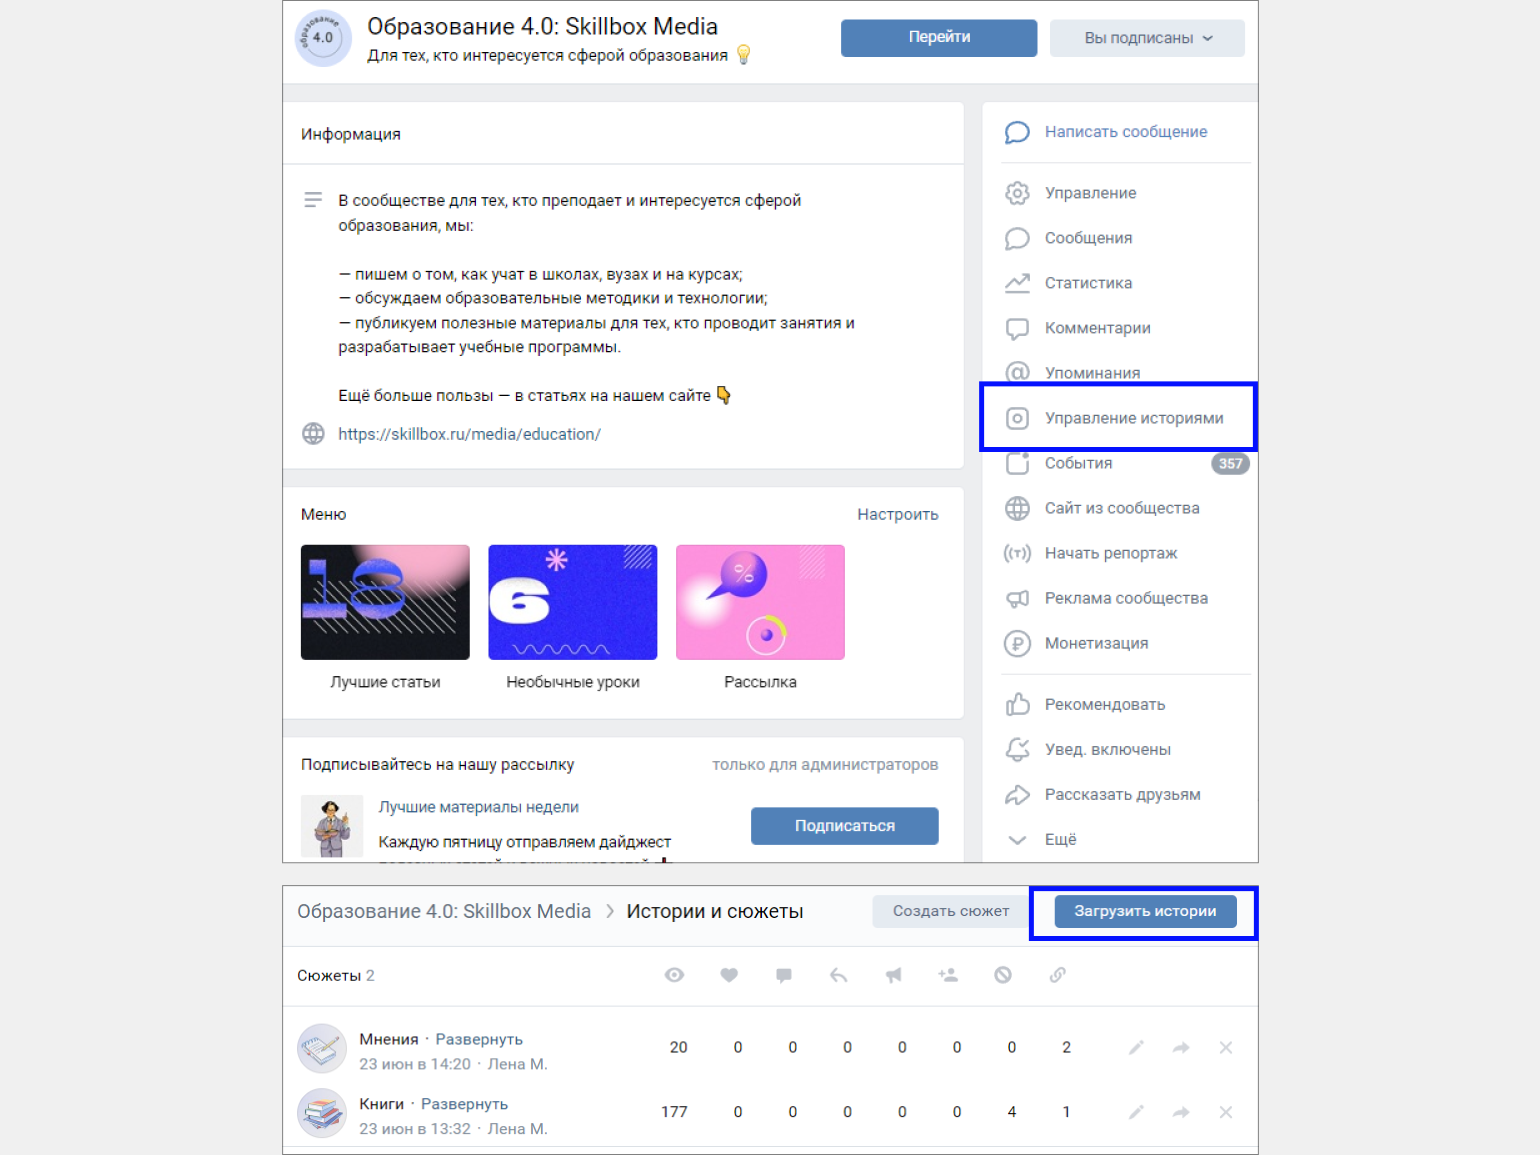 Как привлечь внимание посетителя с помощью виджета приветствия ВКонтакте